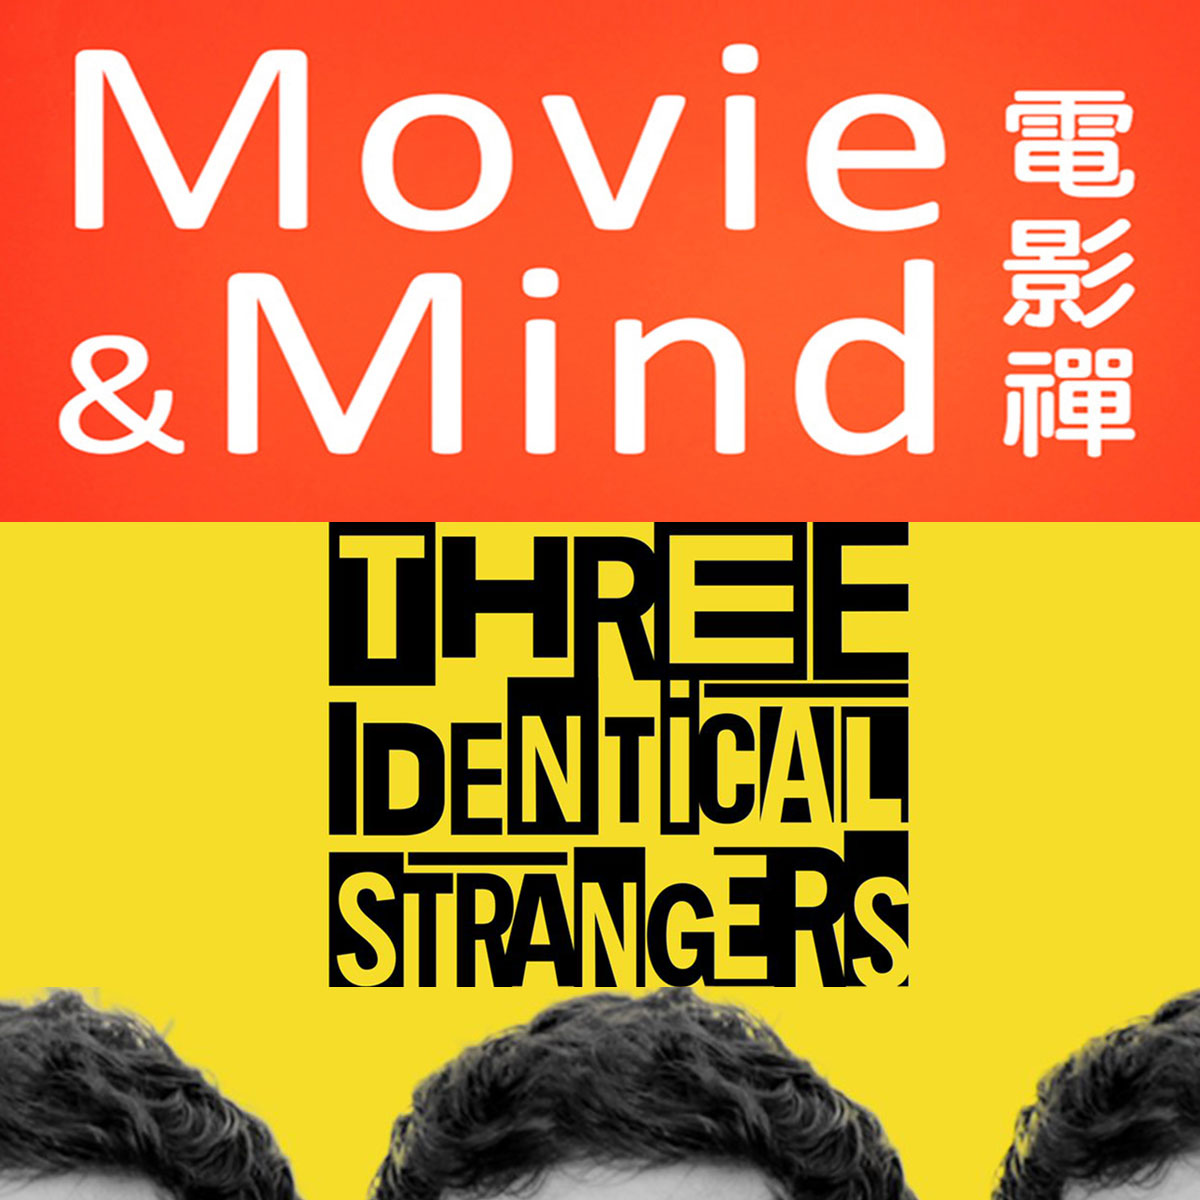 電影禪-三個一模一樣的陌生人 Three Identical Strangers